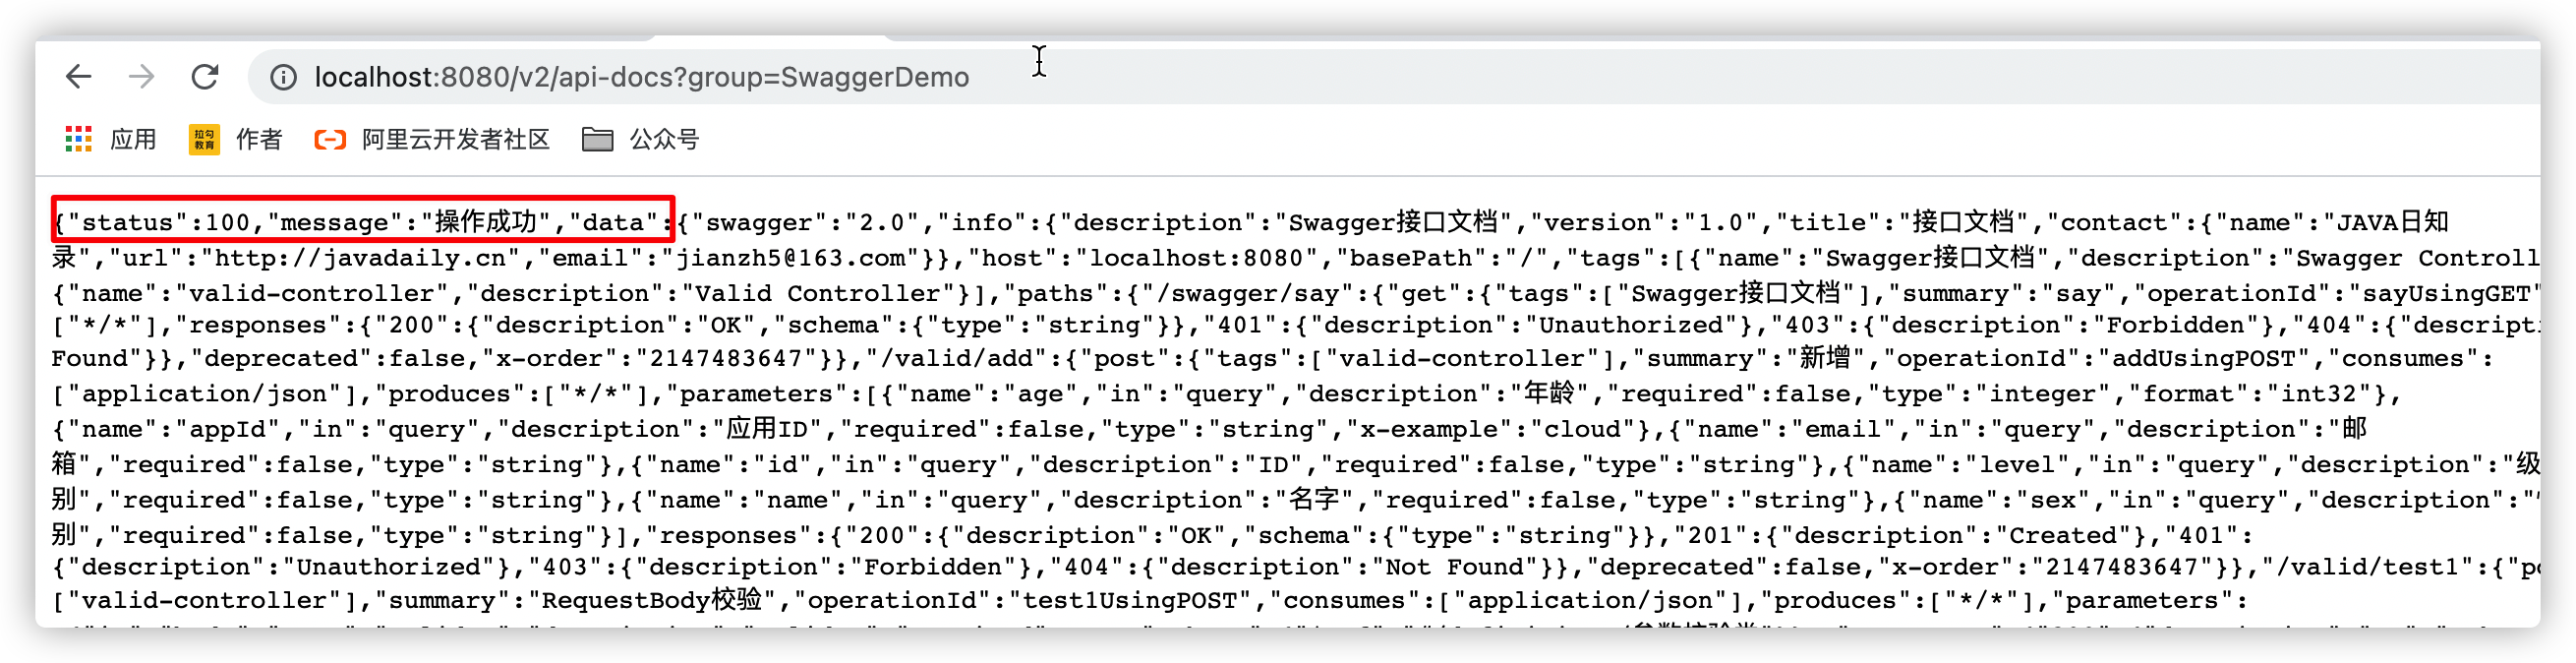 java集成开发SpringBoot生成接口文档的方法是什么